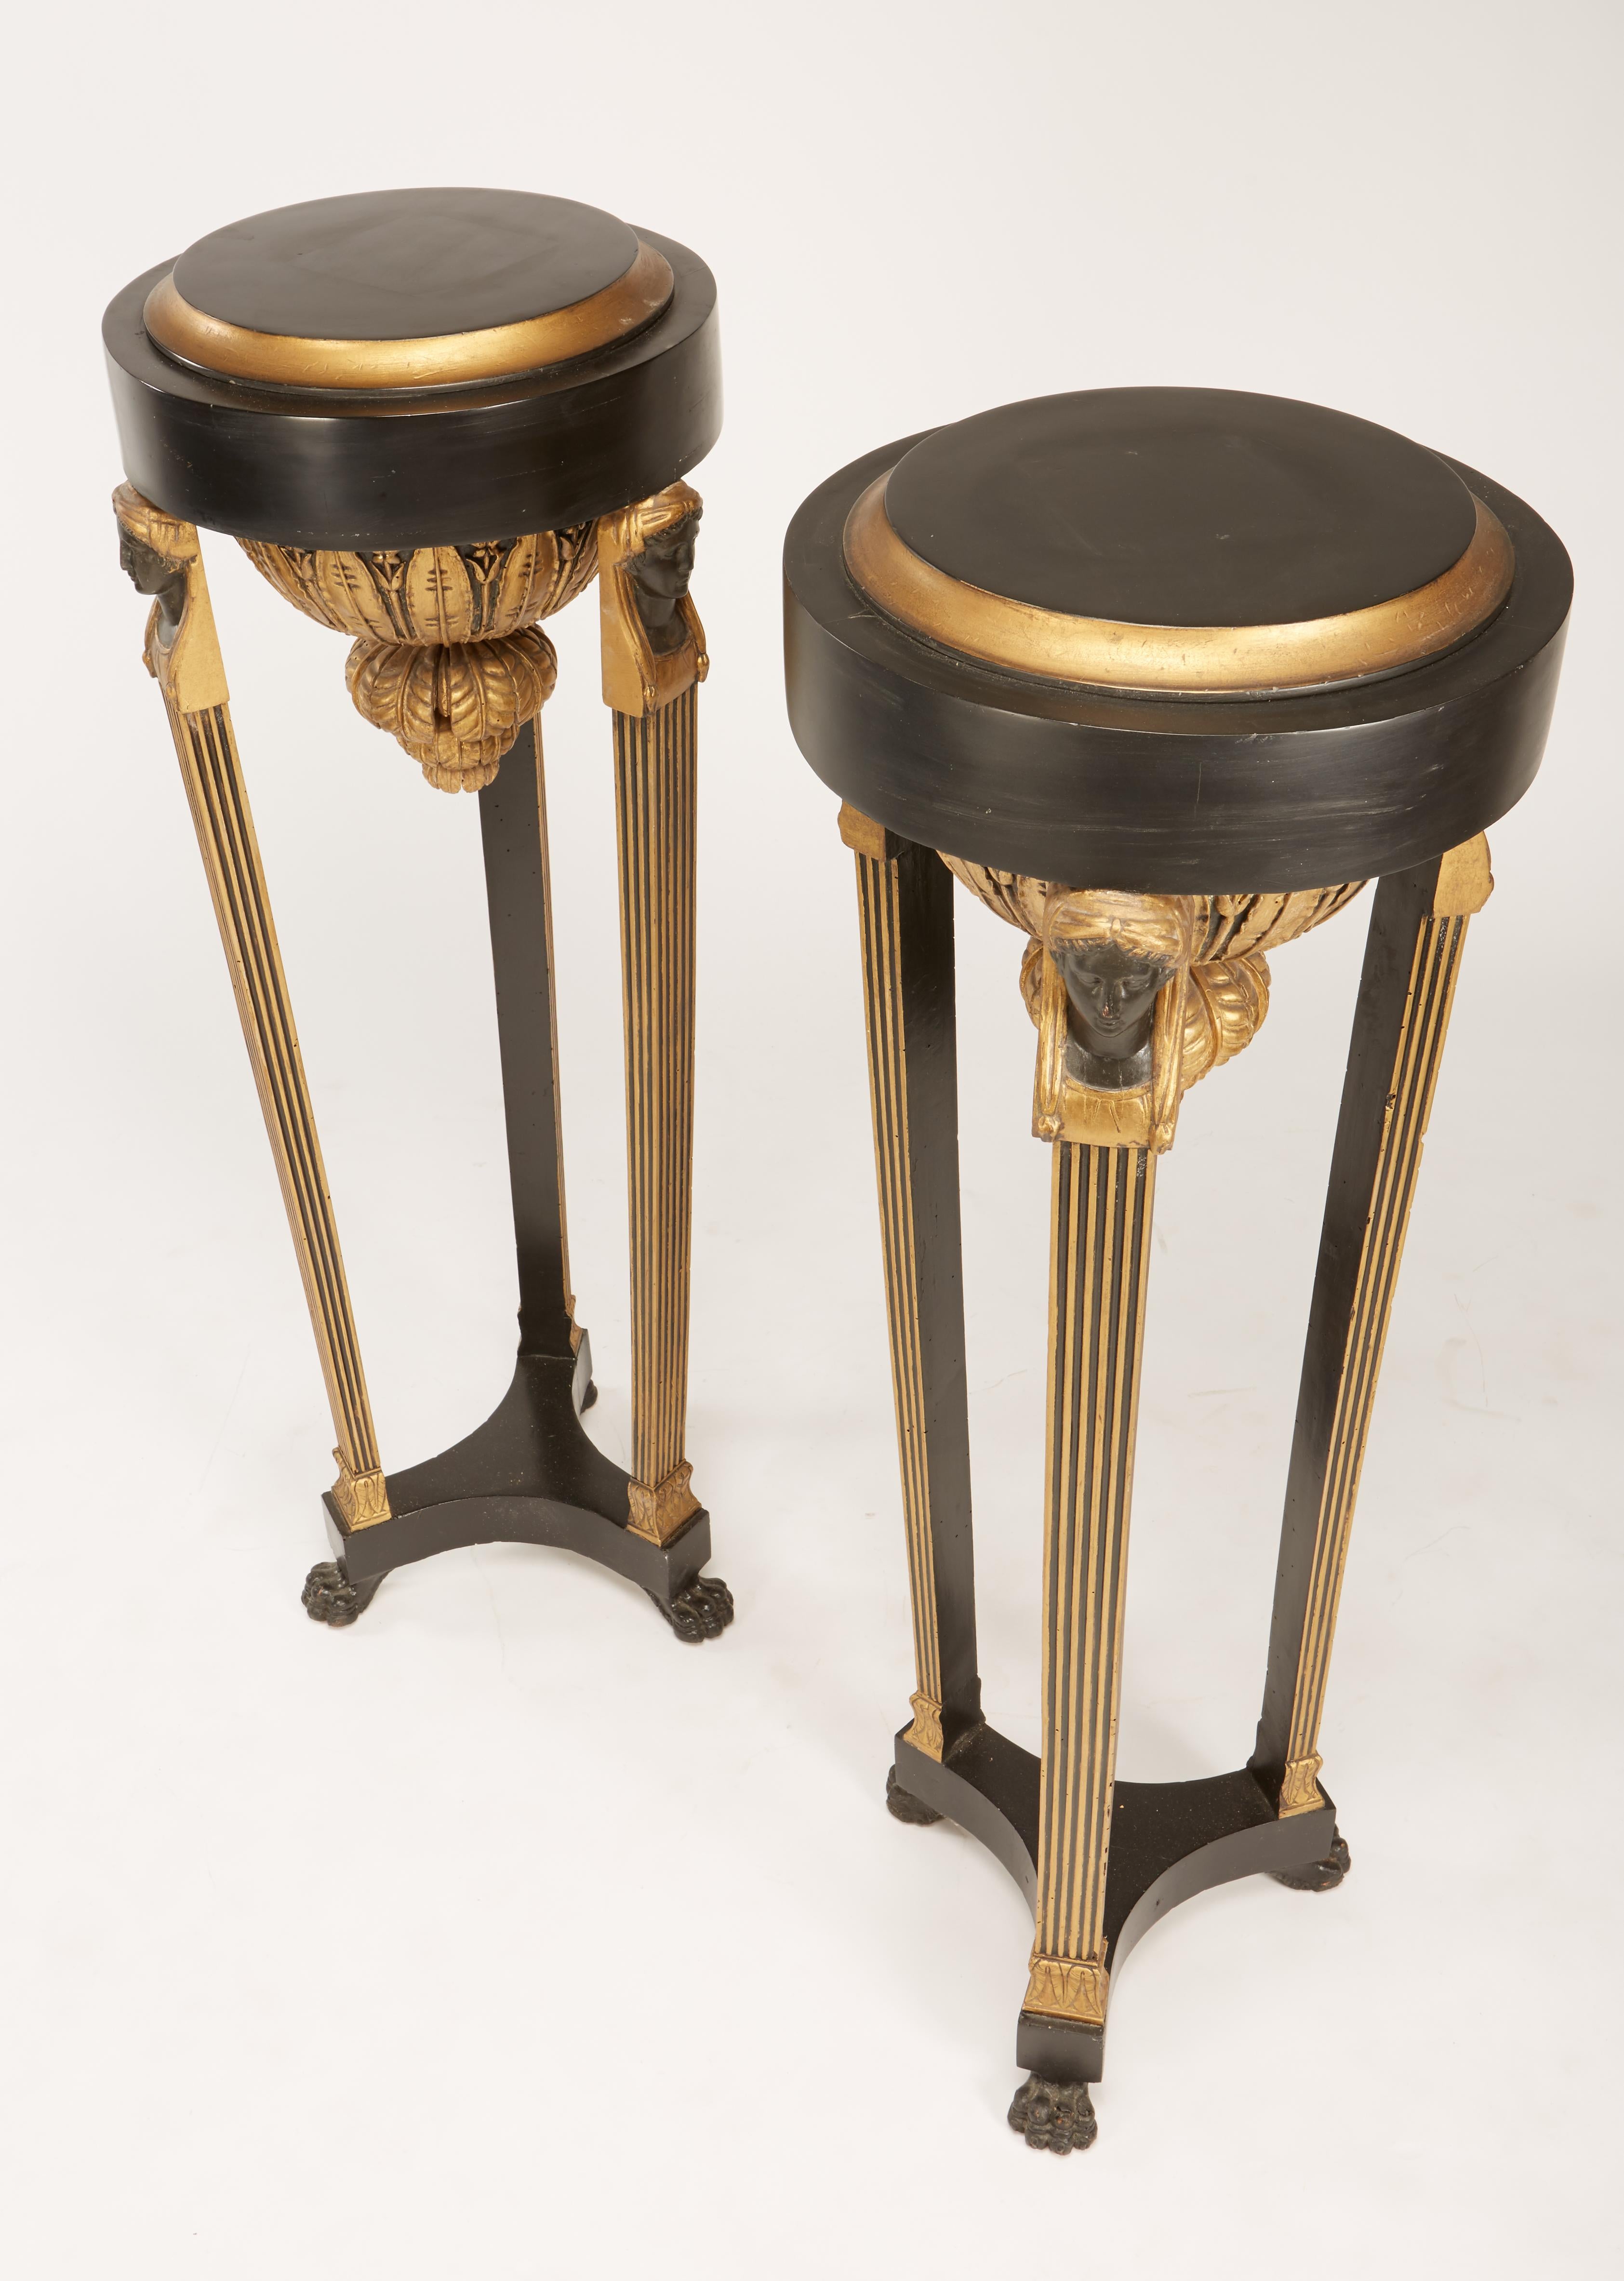 Ein feines Paar kontinentaler italienischer neoklassischer Fackeln, schwarz bemalt und paketvergoldet, mit Urnen mit weiblicher Büste auf kannelierten Beinen auf Tatzenfüßen. Spätere Tops, Top-Durchmesser ist 13,5 